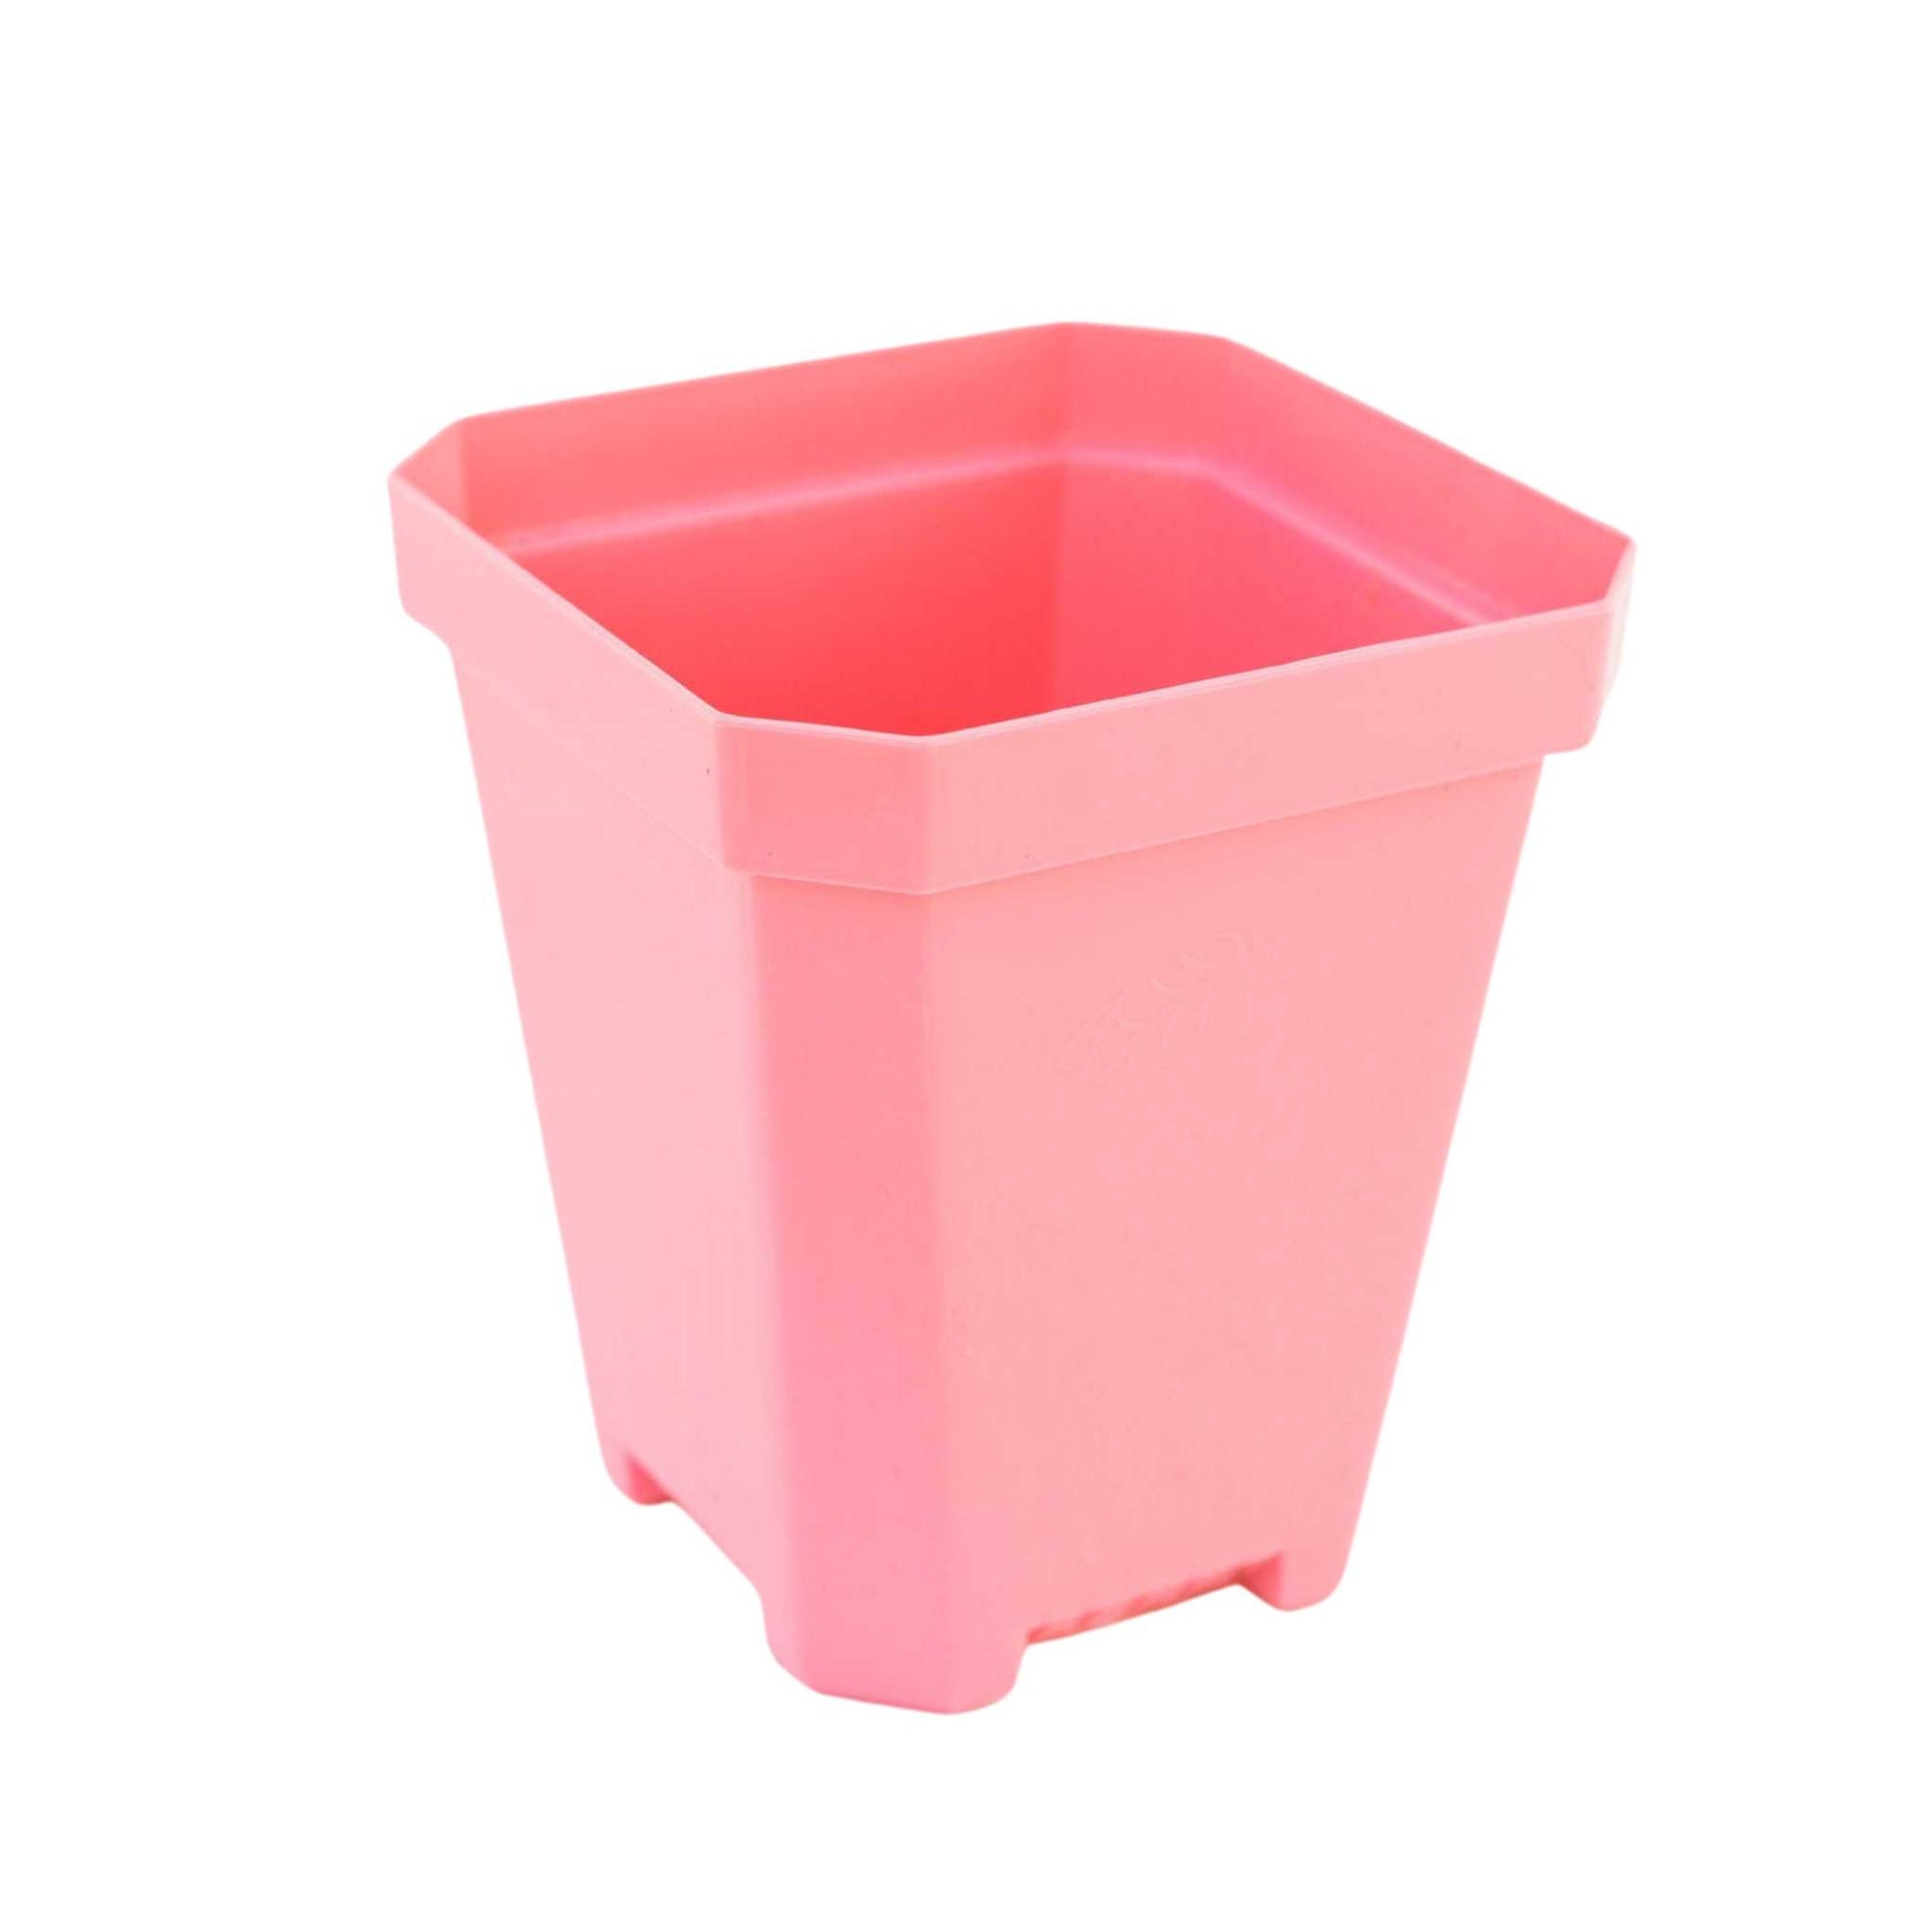 5" pot pink